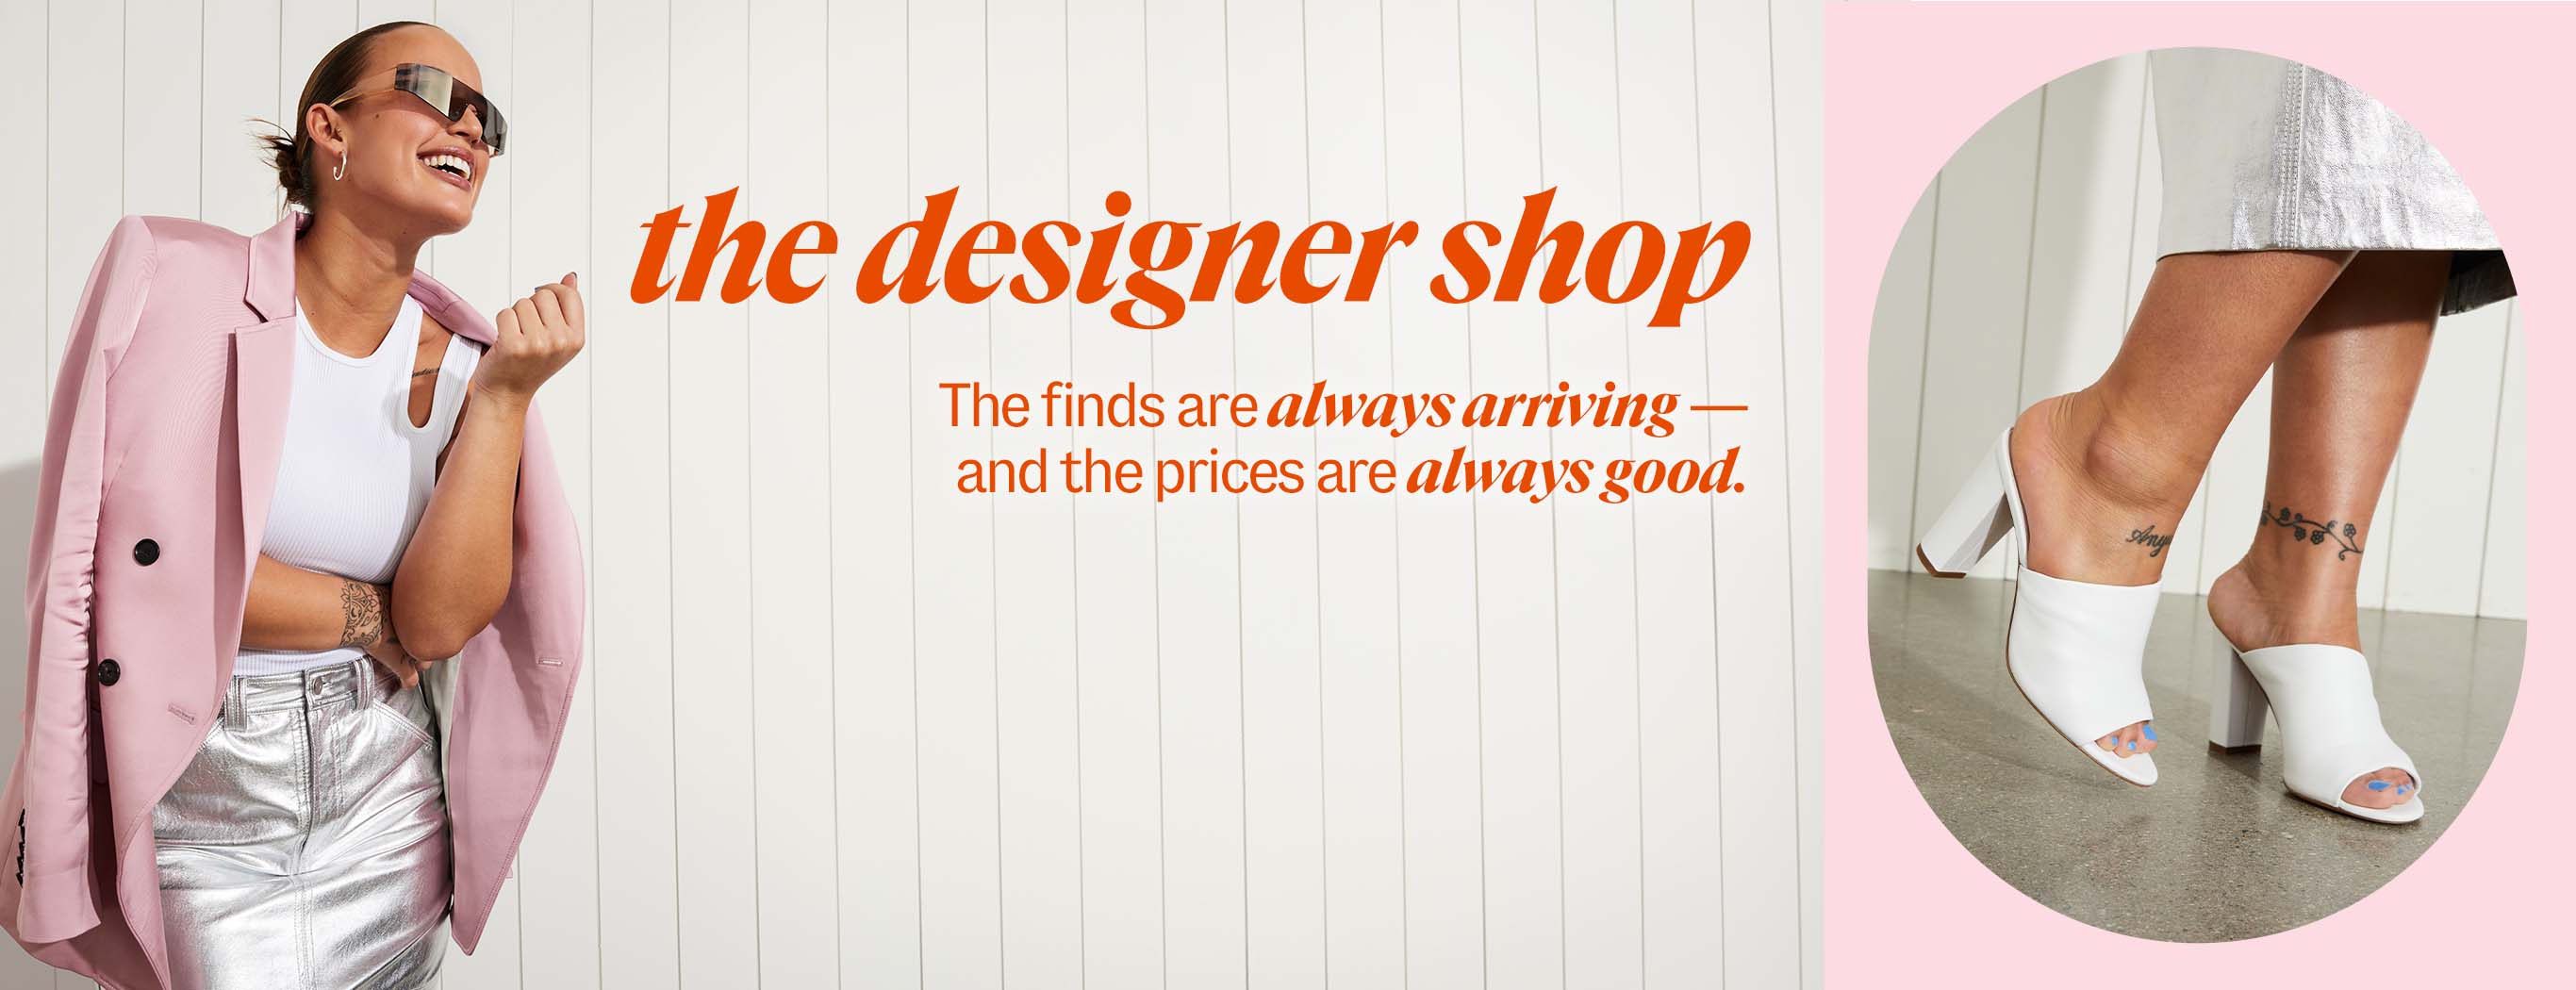 the designer shop. The finds are always arriving Ã¢ÂÂ and the prices are always good.